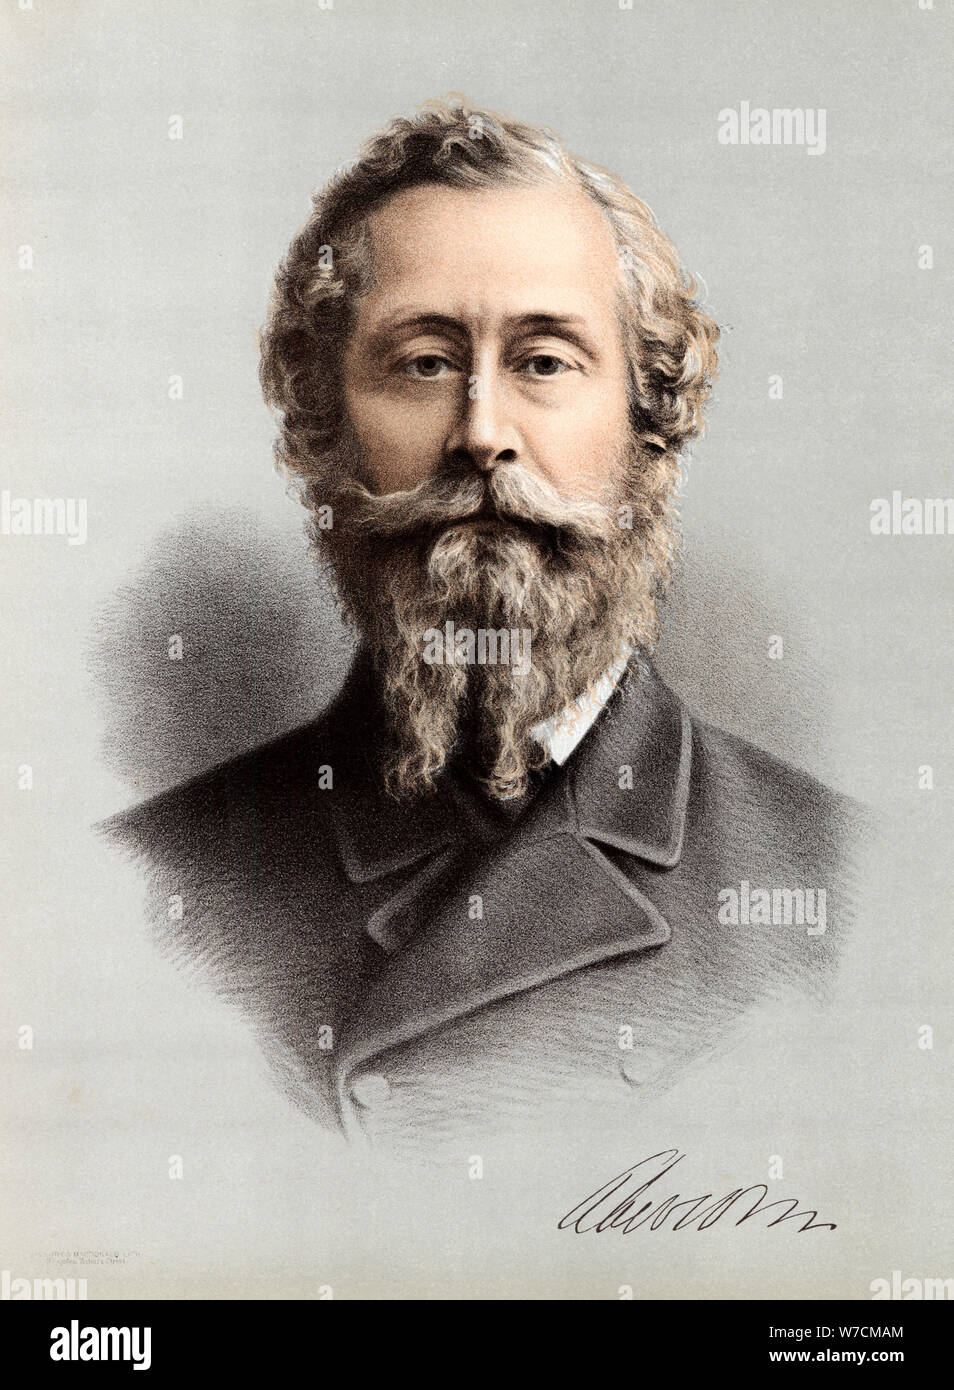 James Hamilton, 1er duc de Abercorn (1811-1885), courtisan et homme d'État britannique, c1880. Artiste : Inconnu Banque D'Images